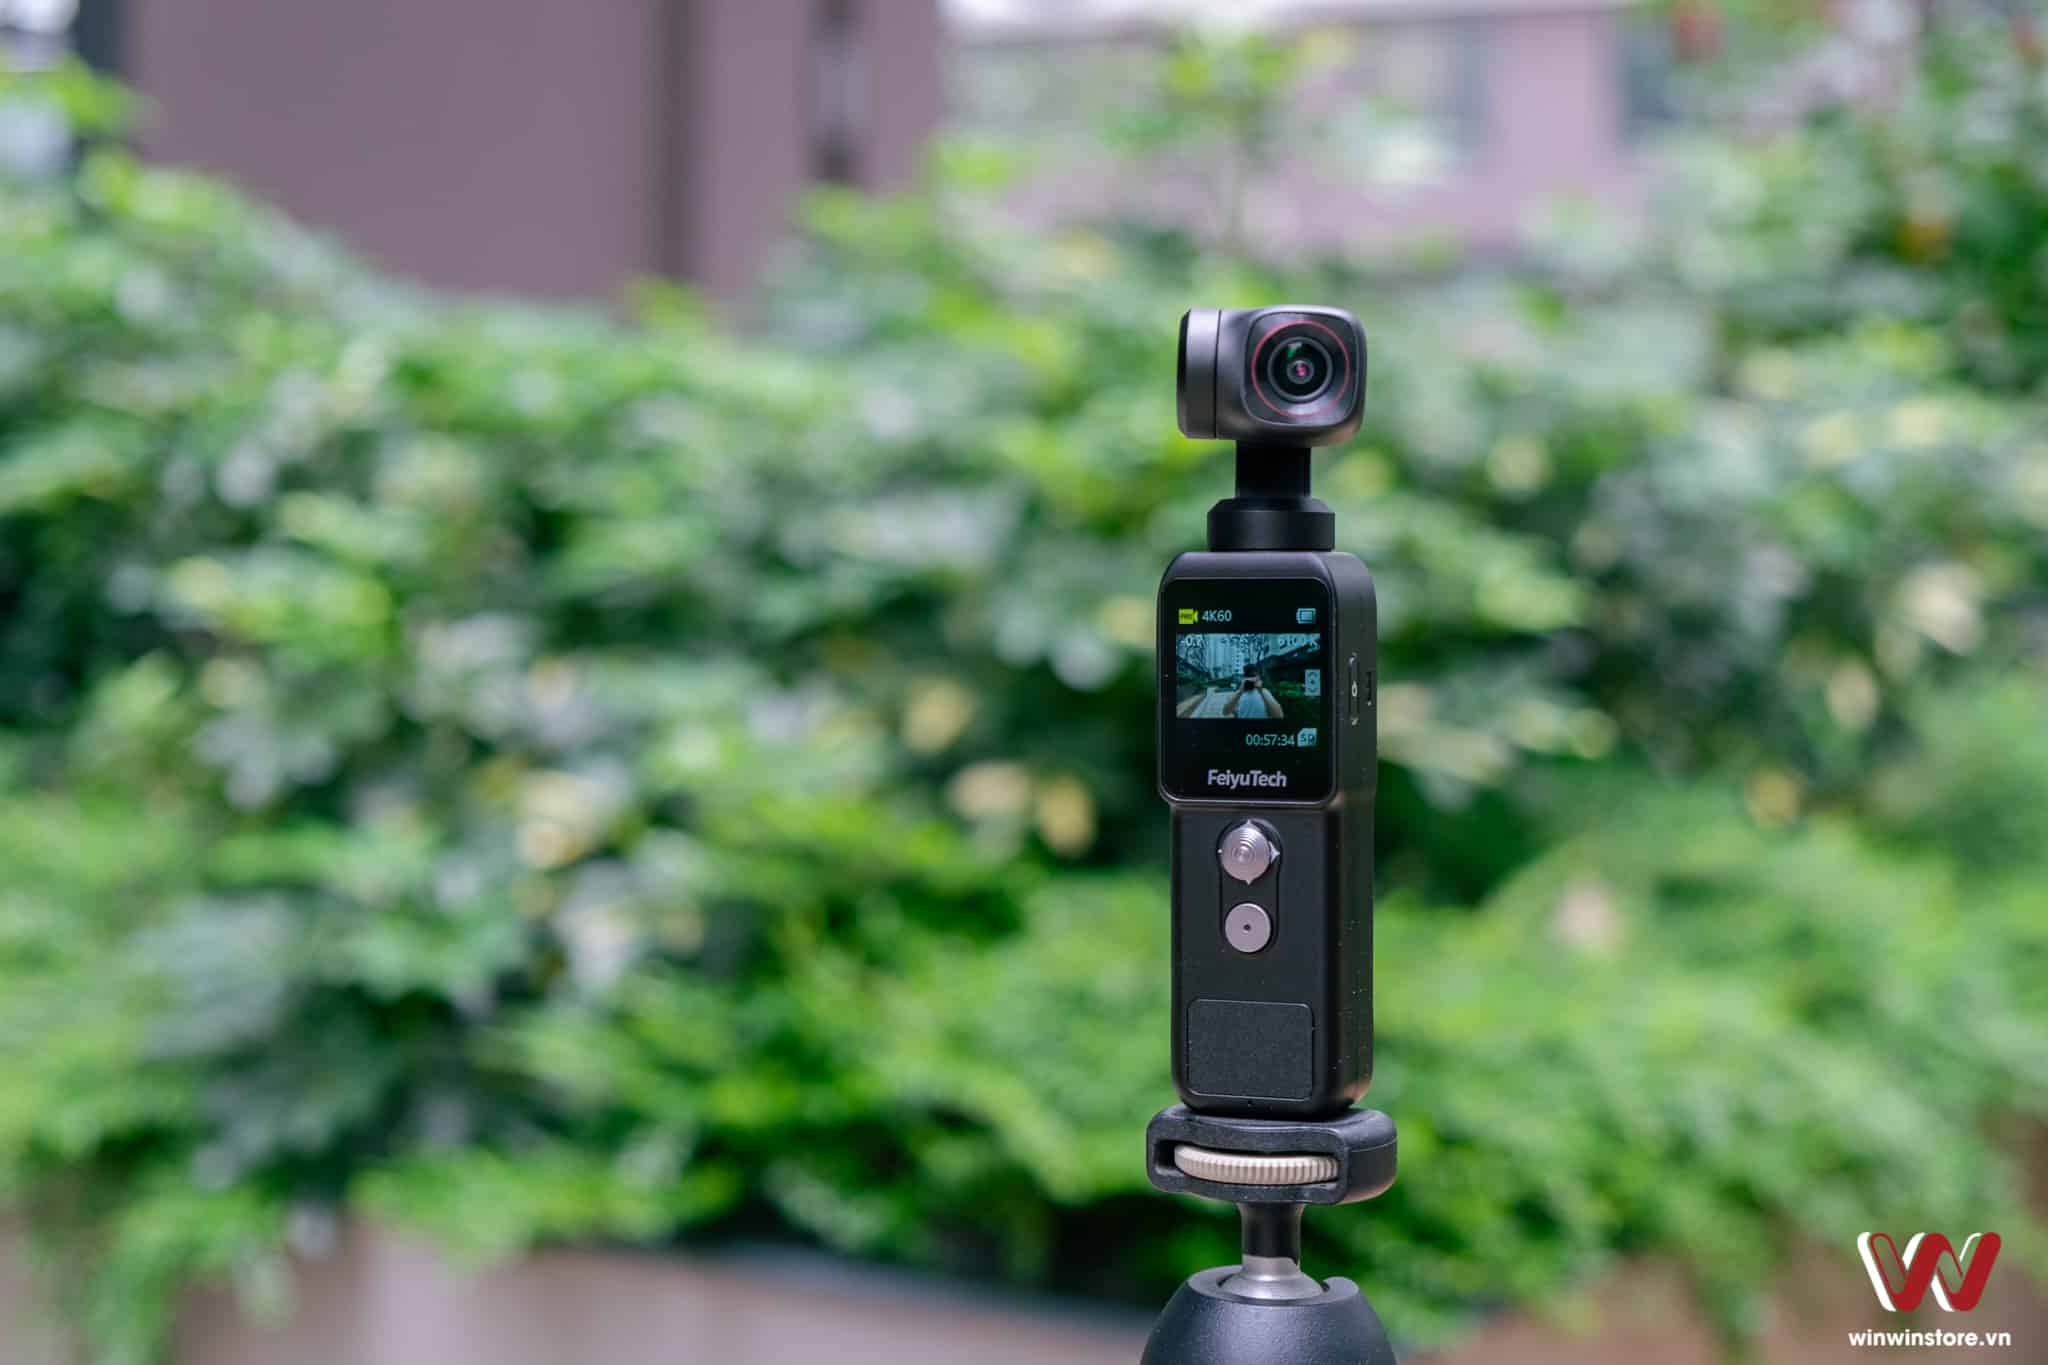 Đánh giá camera hành trình cầm tay Feiyu Pocket 2: Chống rung 3 trục tốt, chất lượng quay đáng chú ý, hoàn hảo cho vlog